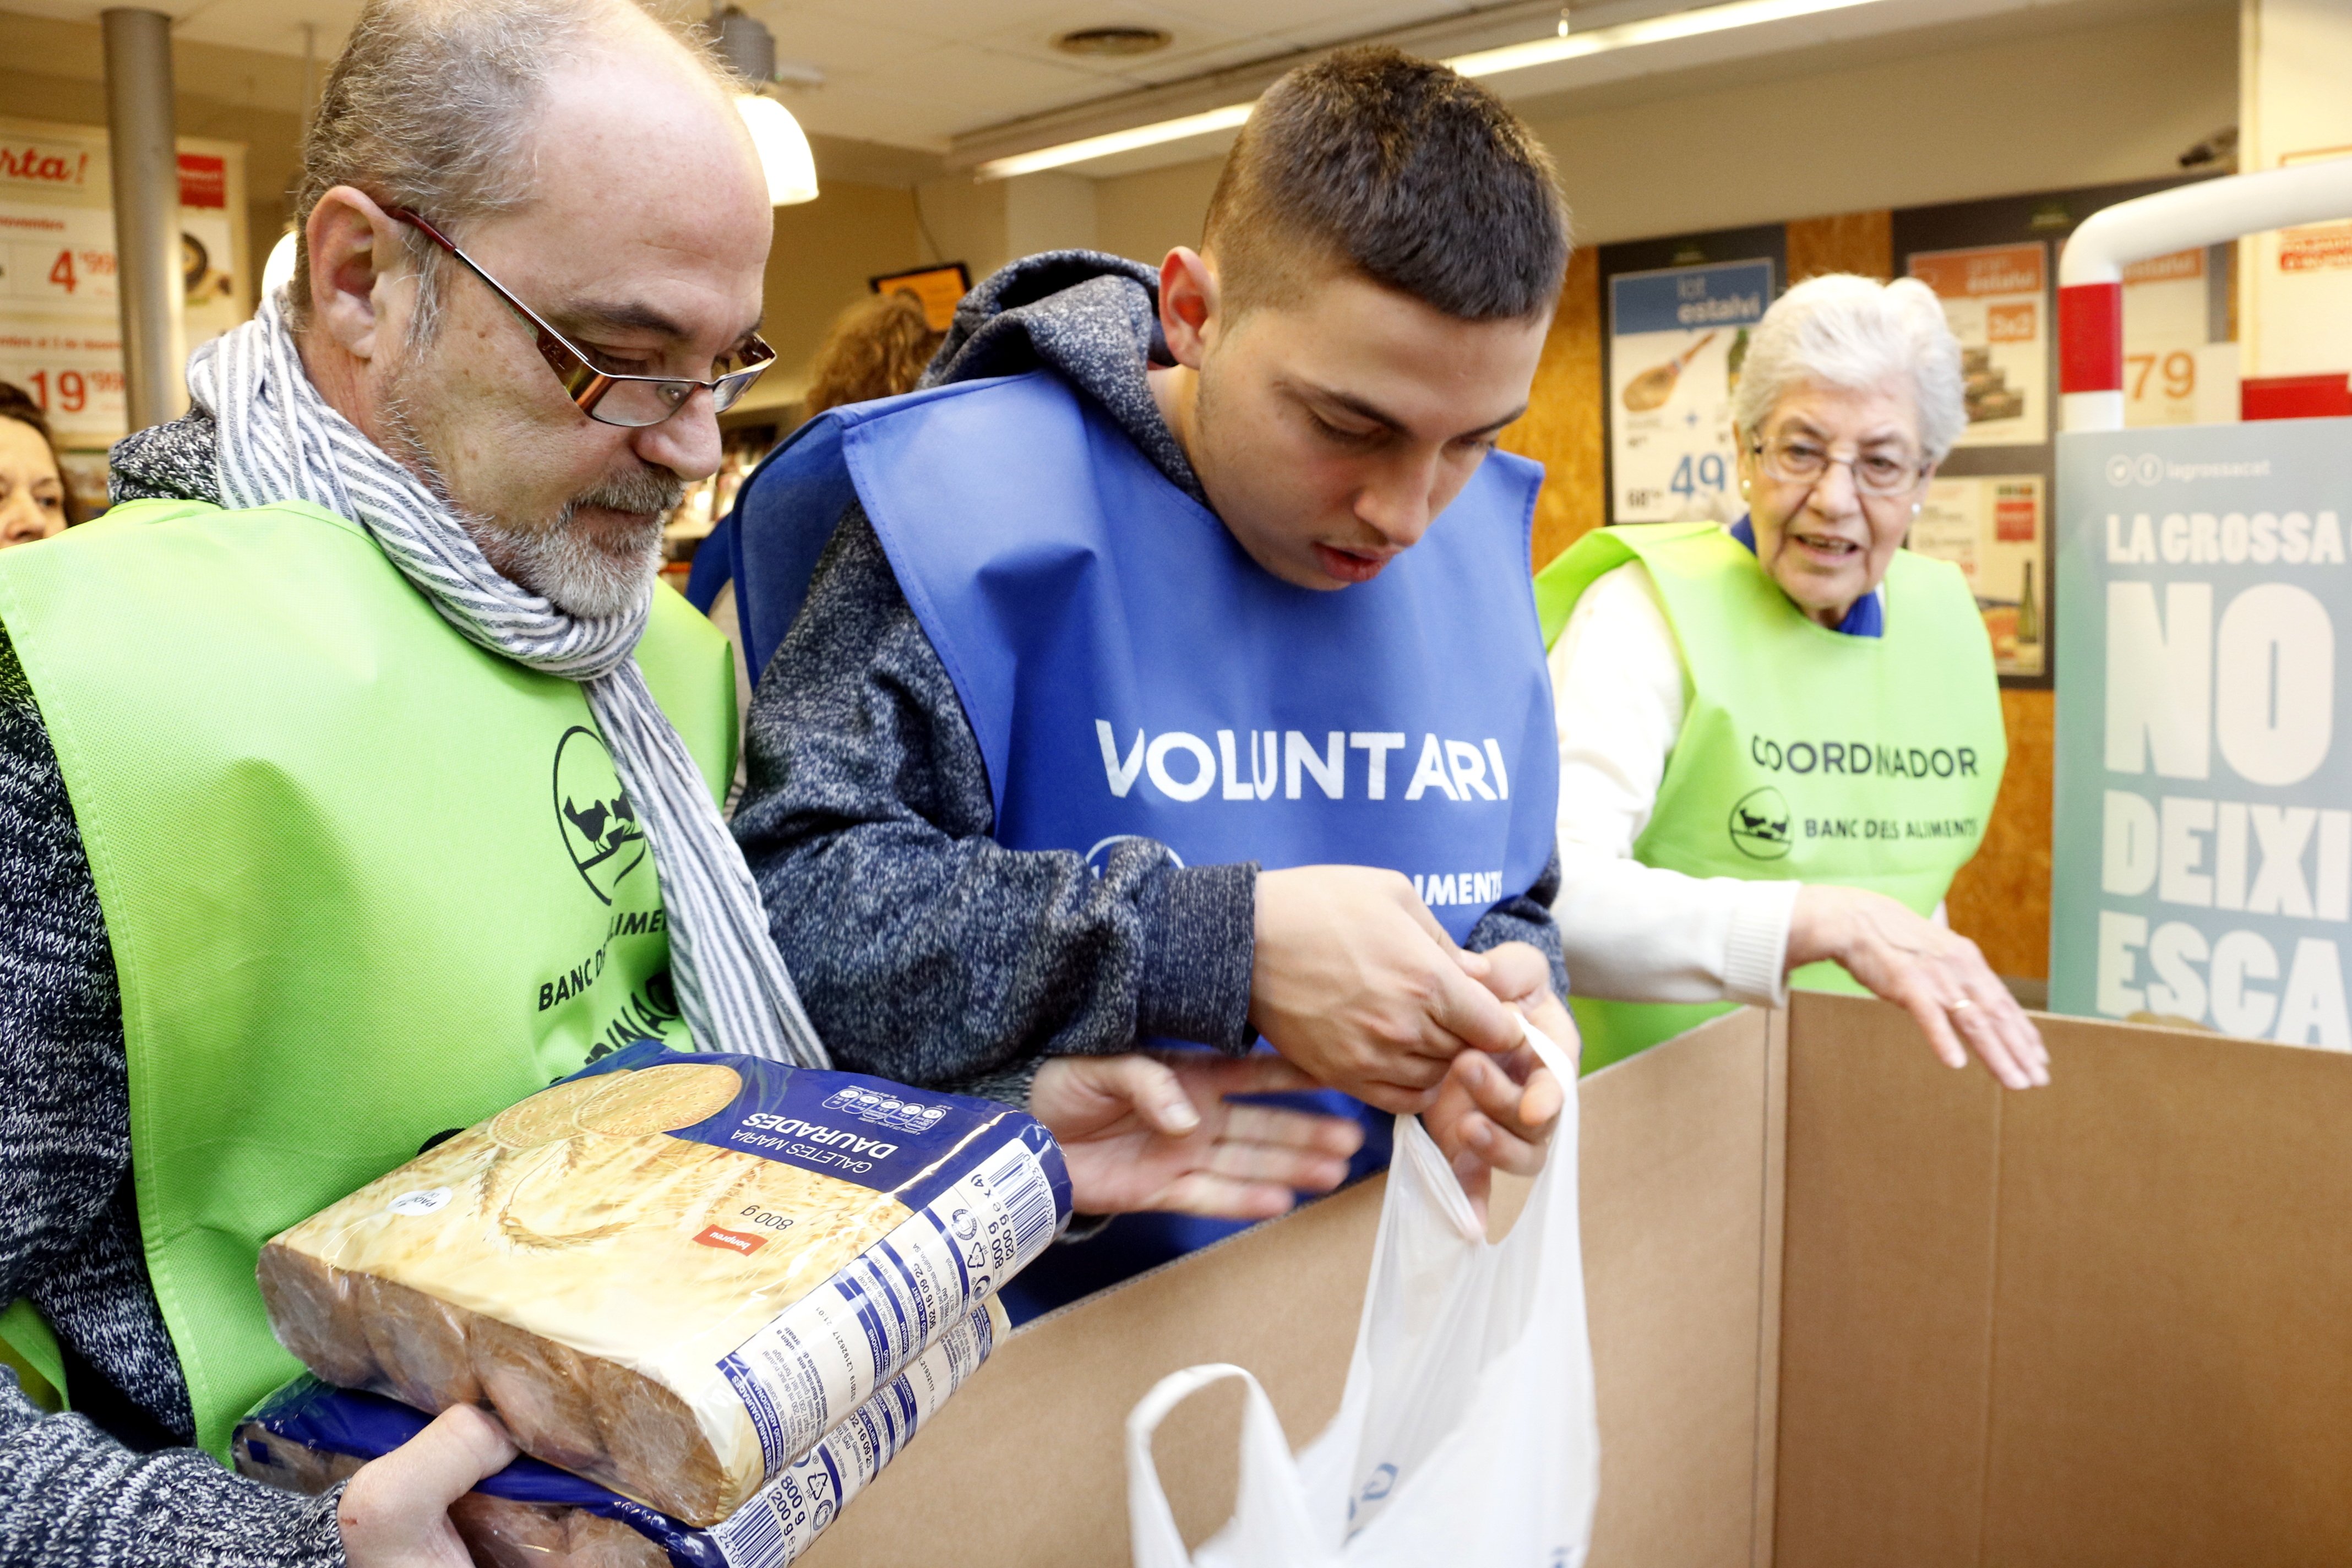 SOS del Banc dels Aliments: falten 9.000 voluntaris per al Gran Recapte